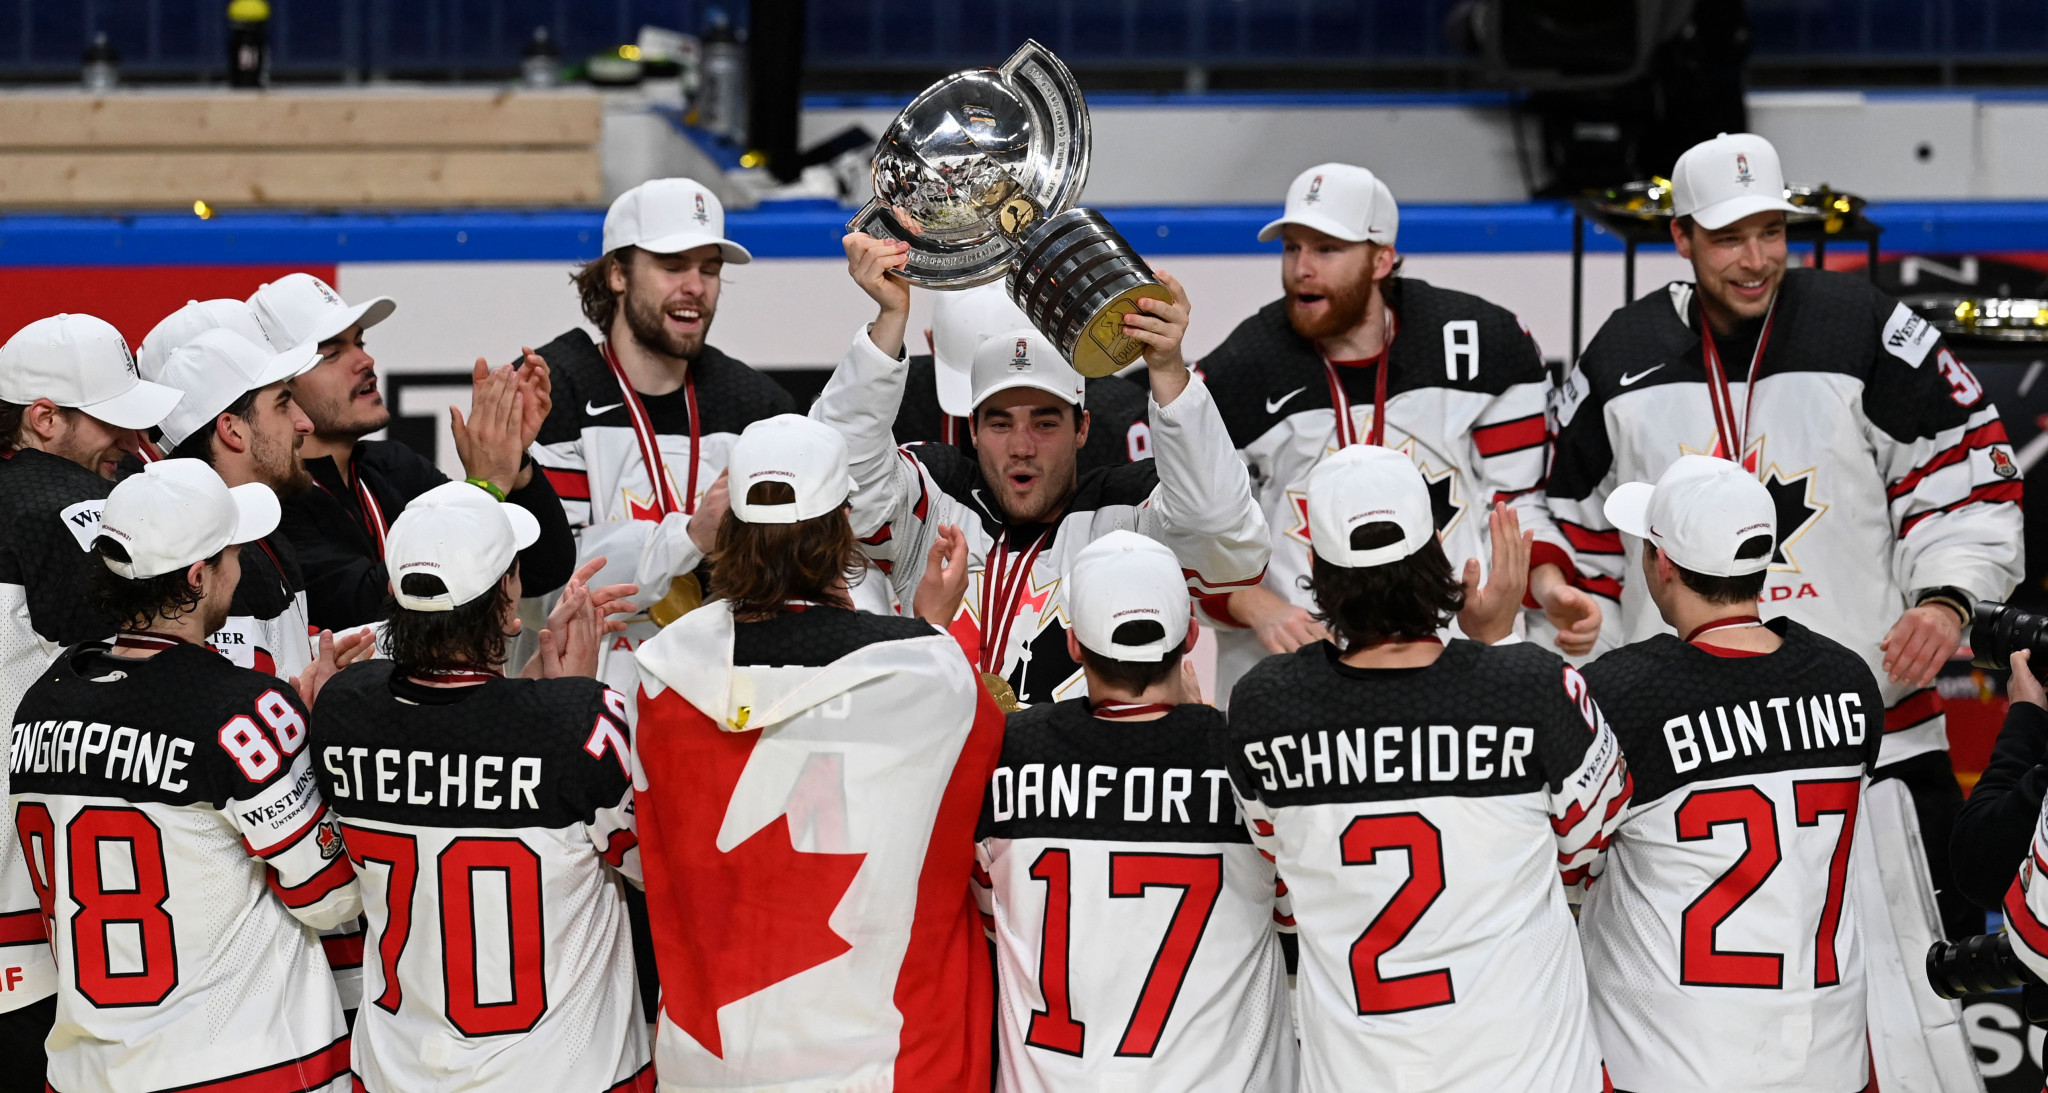 Šī mēneša sākumā Kanāda uzvarēja Somiju, lai uzvarētu IIHF pasaules čempionātā. © Getty Images